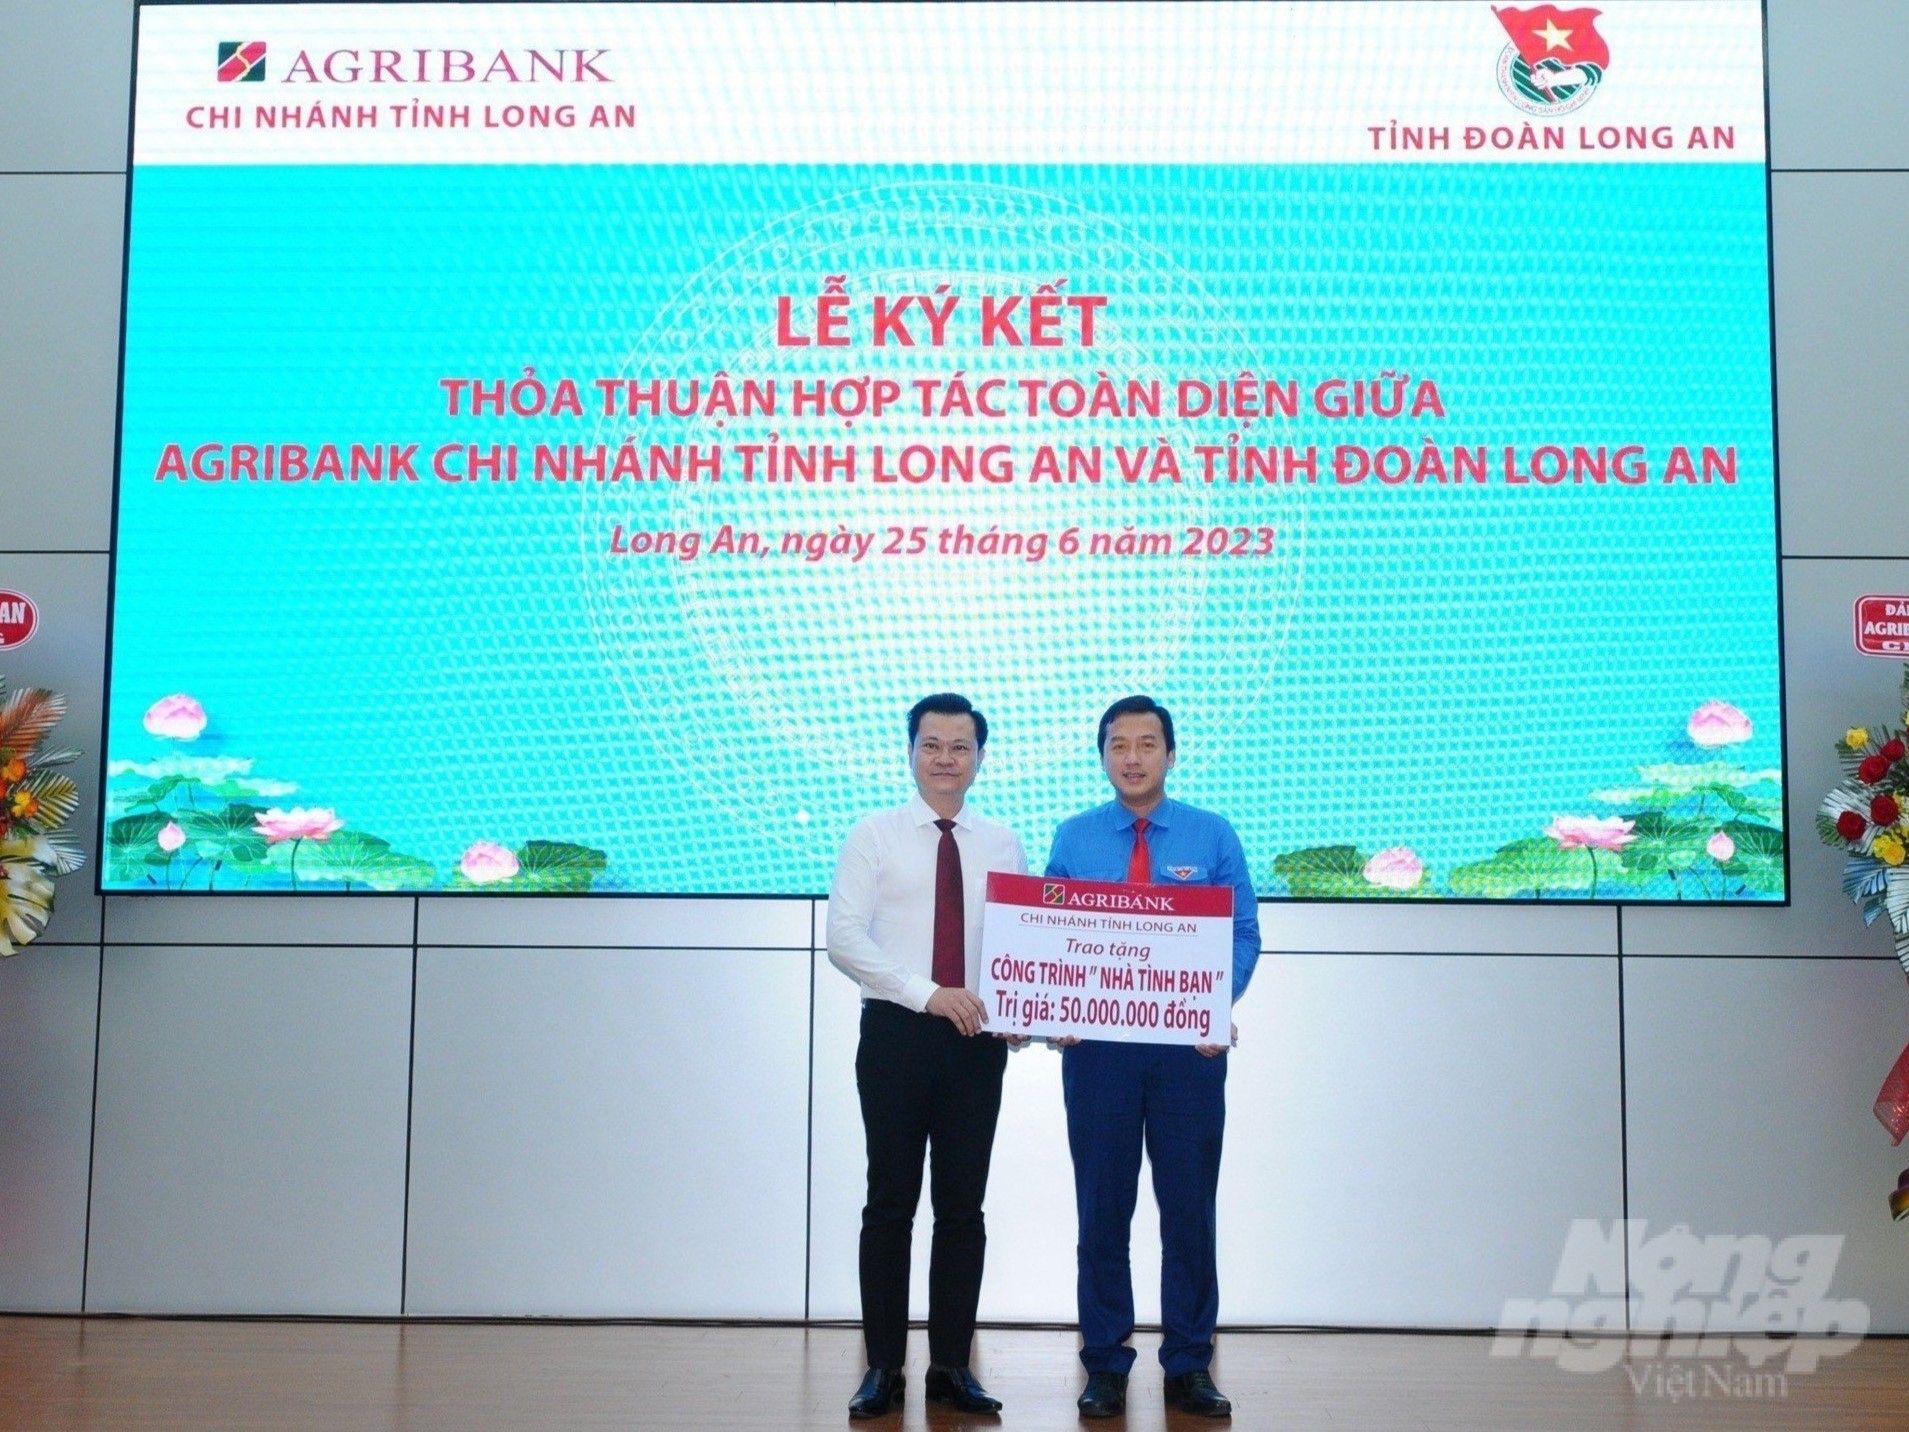 Ngân hàng Agribank chi nhánh tỉnh Long An trao bảng tượng trưng xây dựng công trình nhà tình bạn. Ảnh: Nhật Minh.